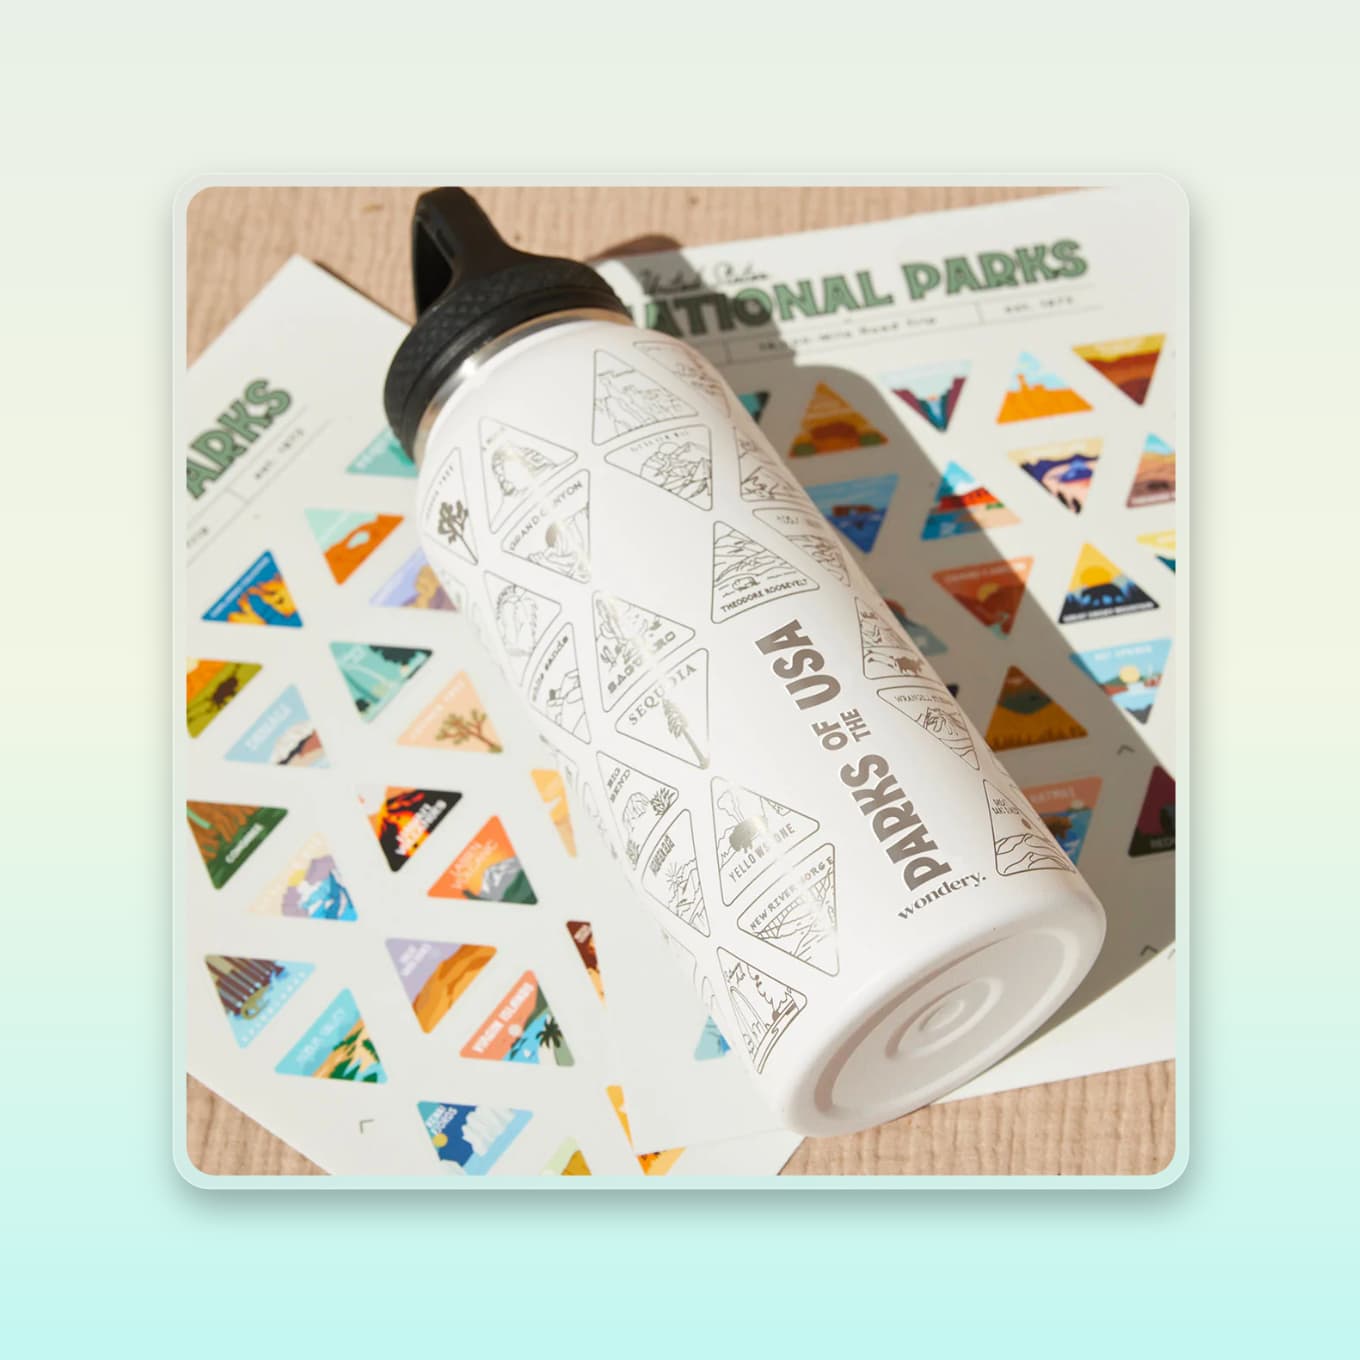 Waterfles met bedrukte driehoeken voor elk nationaal park - en een stickerpakket dat kan worden gebruikt om de parken die je hebt bezocht te markeren